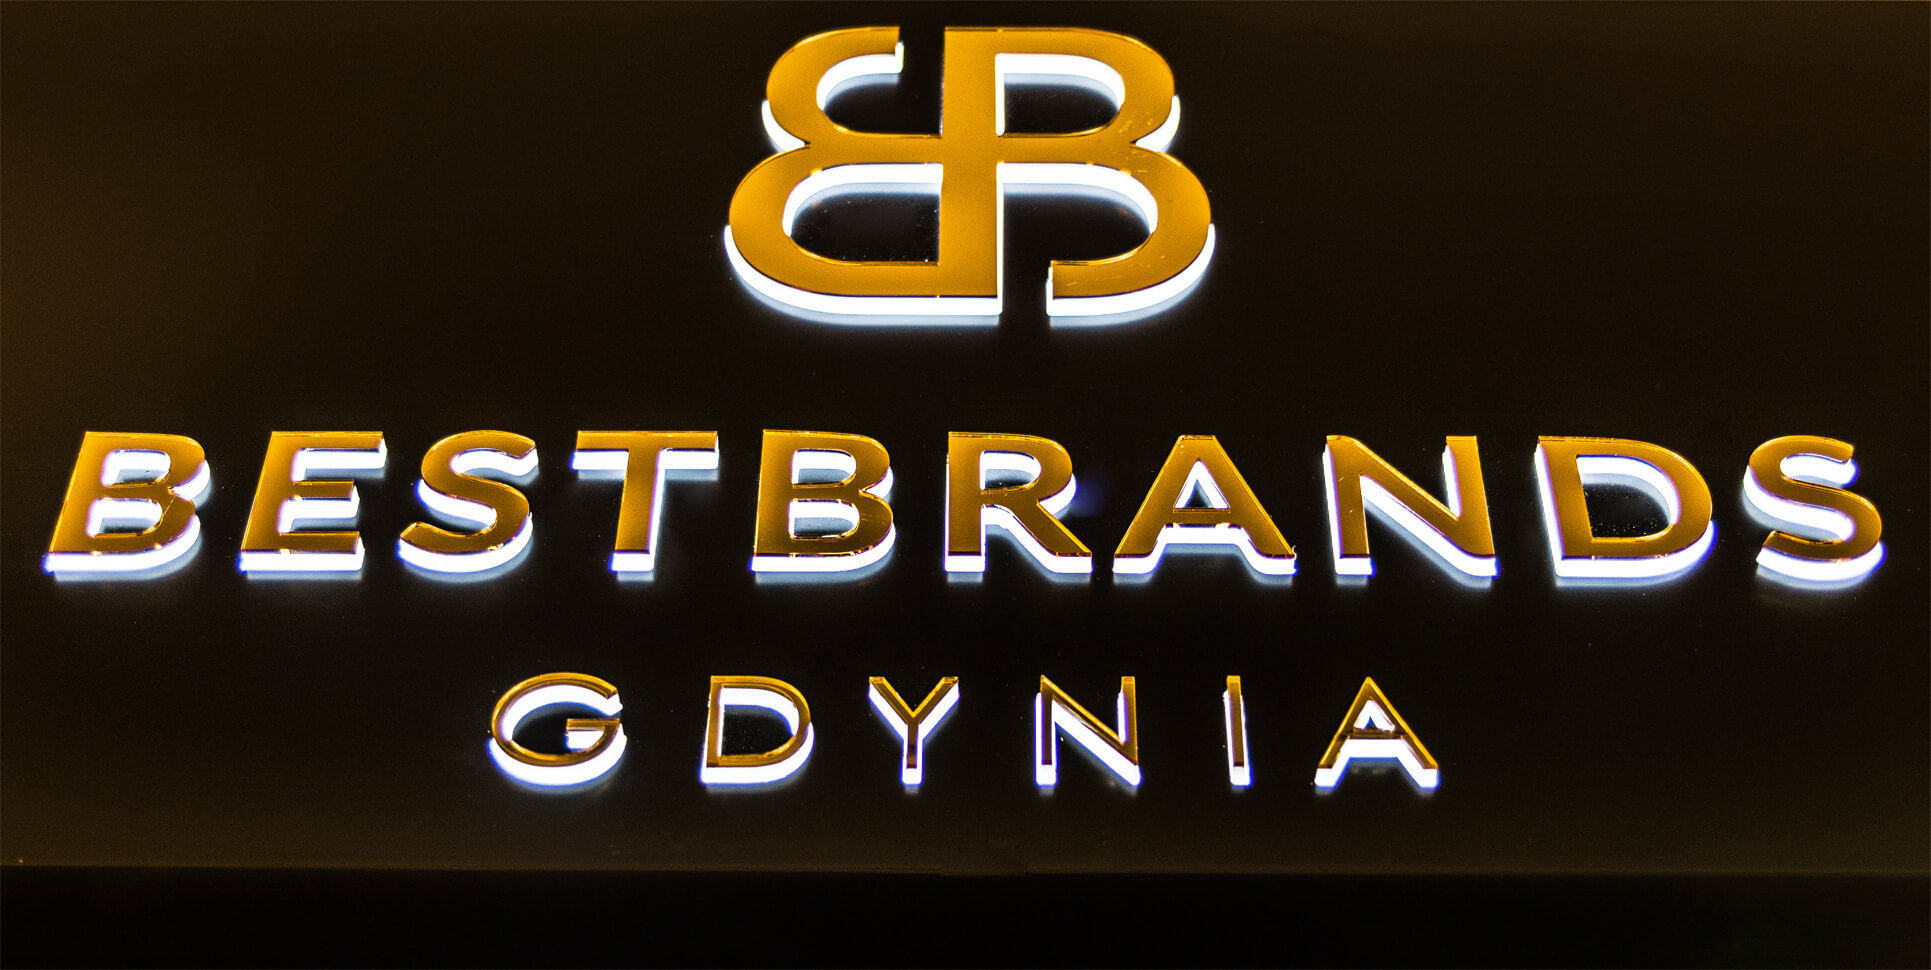 Bestbrands Gdynia - Bestbrands Gdynia - caja de luz publicitaria sobre la entrada